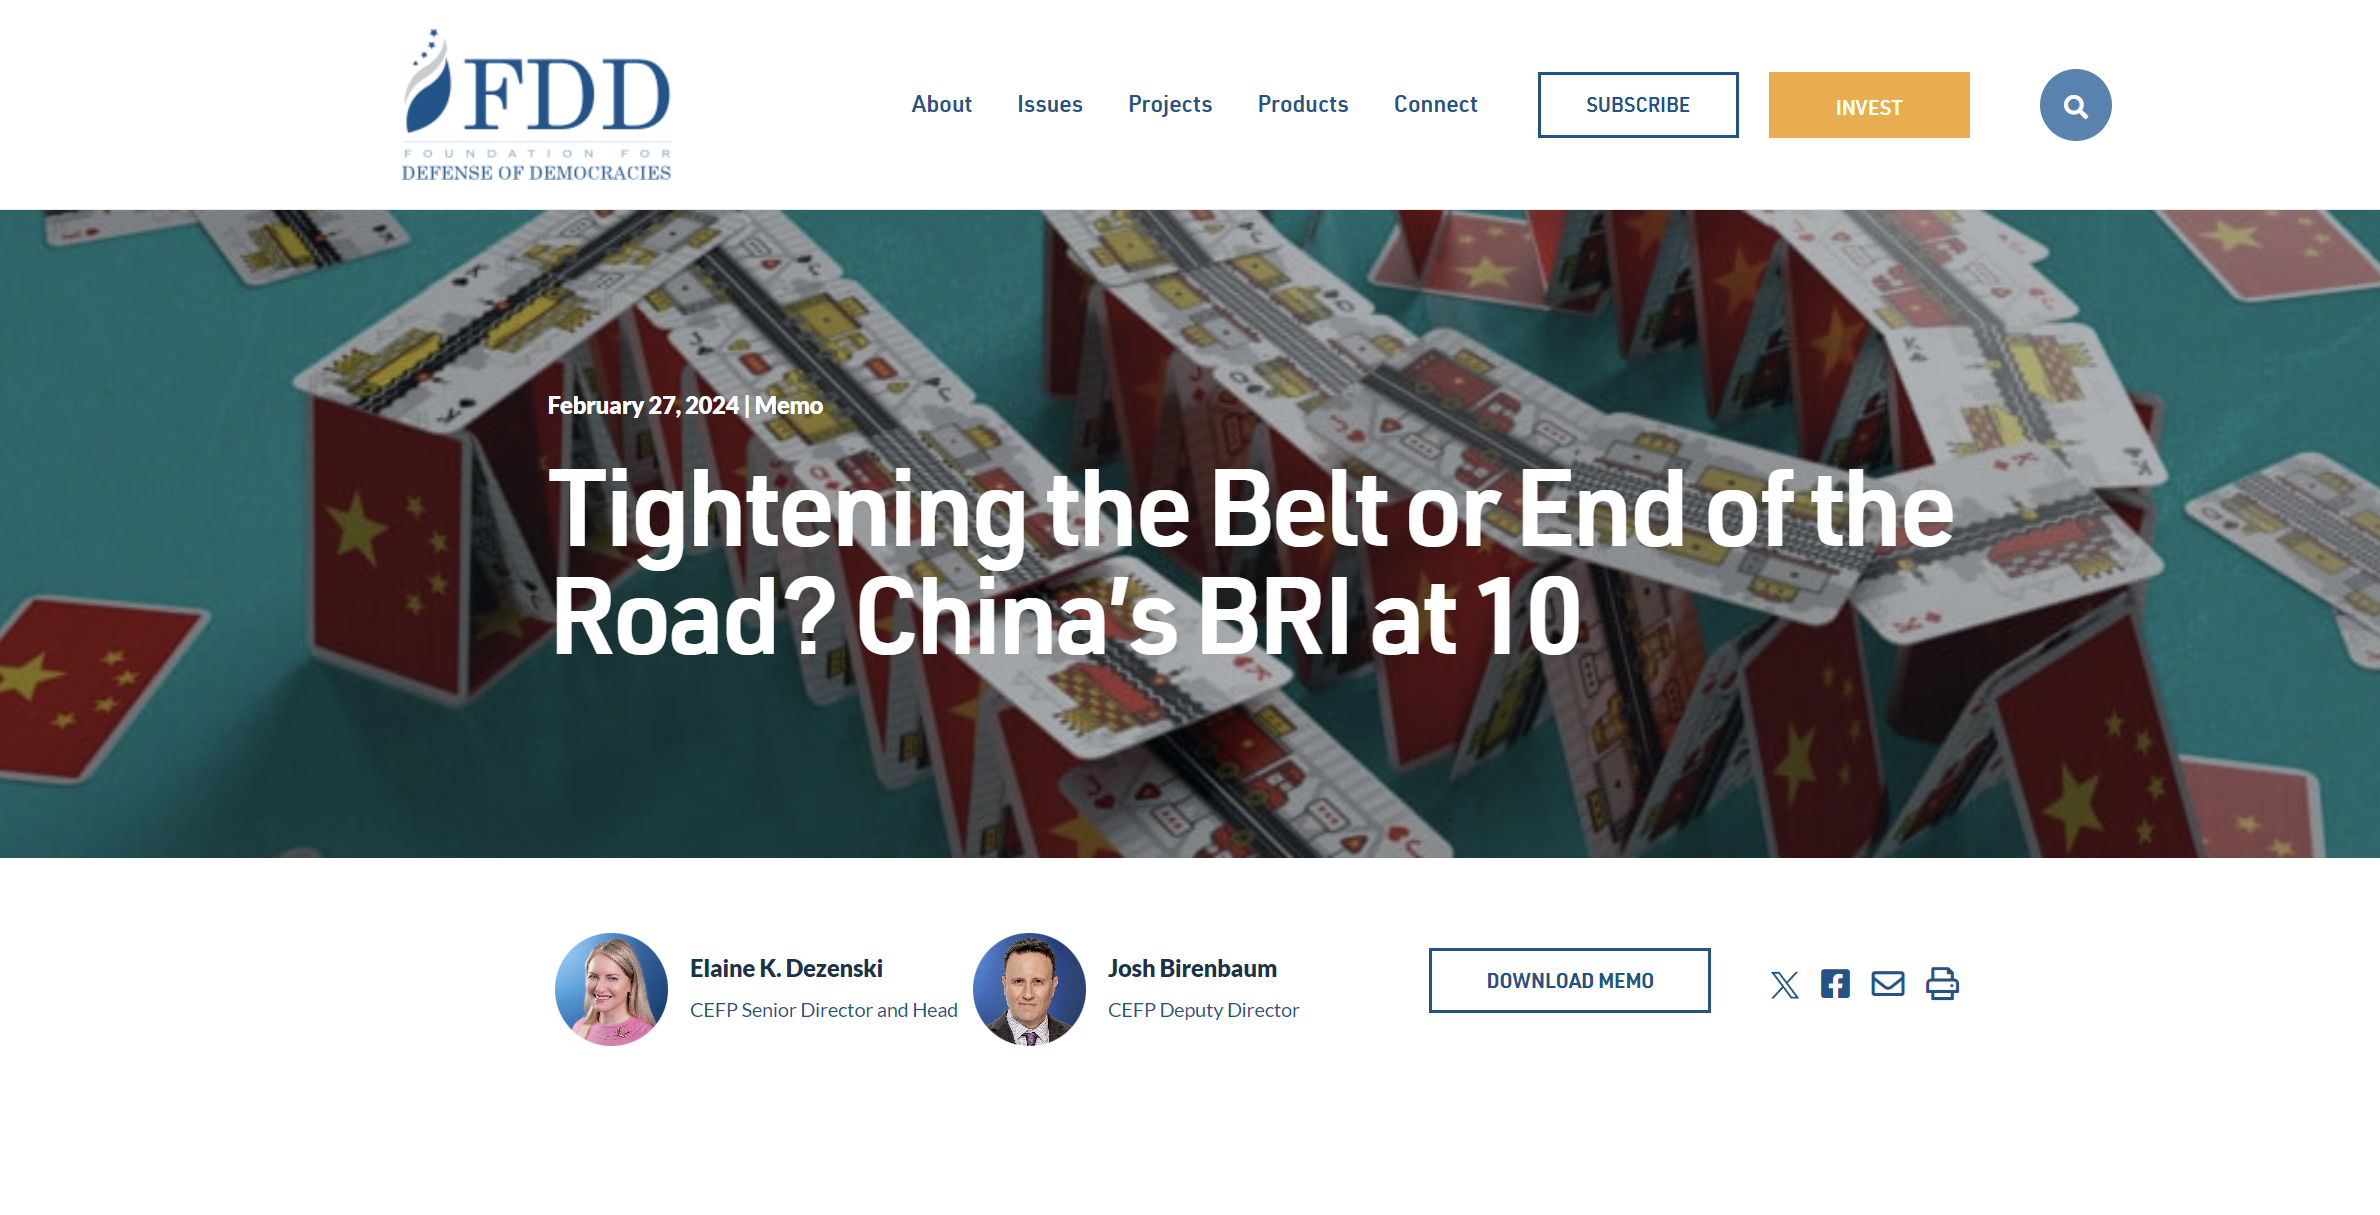 Έκθεση κόλαφος για τον BRI: Διαφθορά και πολιτικές αντιδράσεις για τον “Δρόμο του Μεταξιού” της Κίνας! Προκάλεσε κοινωνικό, οικονομικό και περιβαλλοντικό όλεθρο